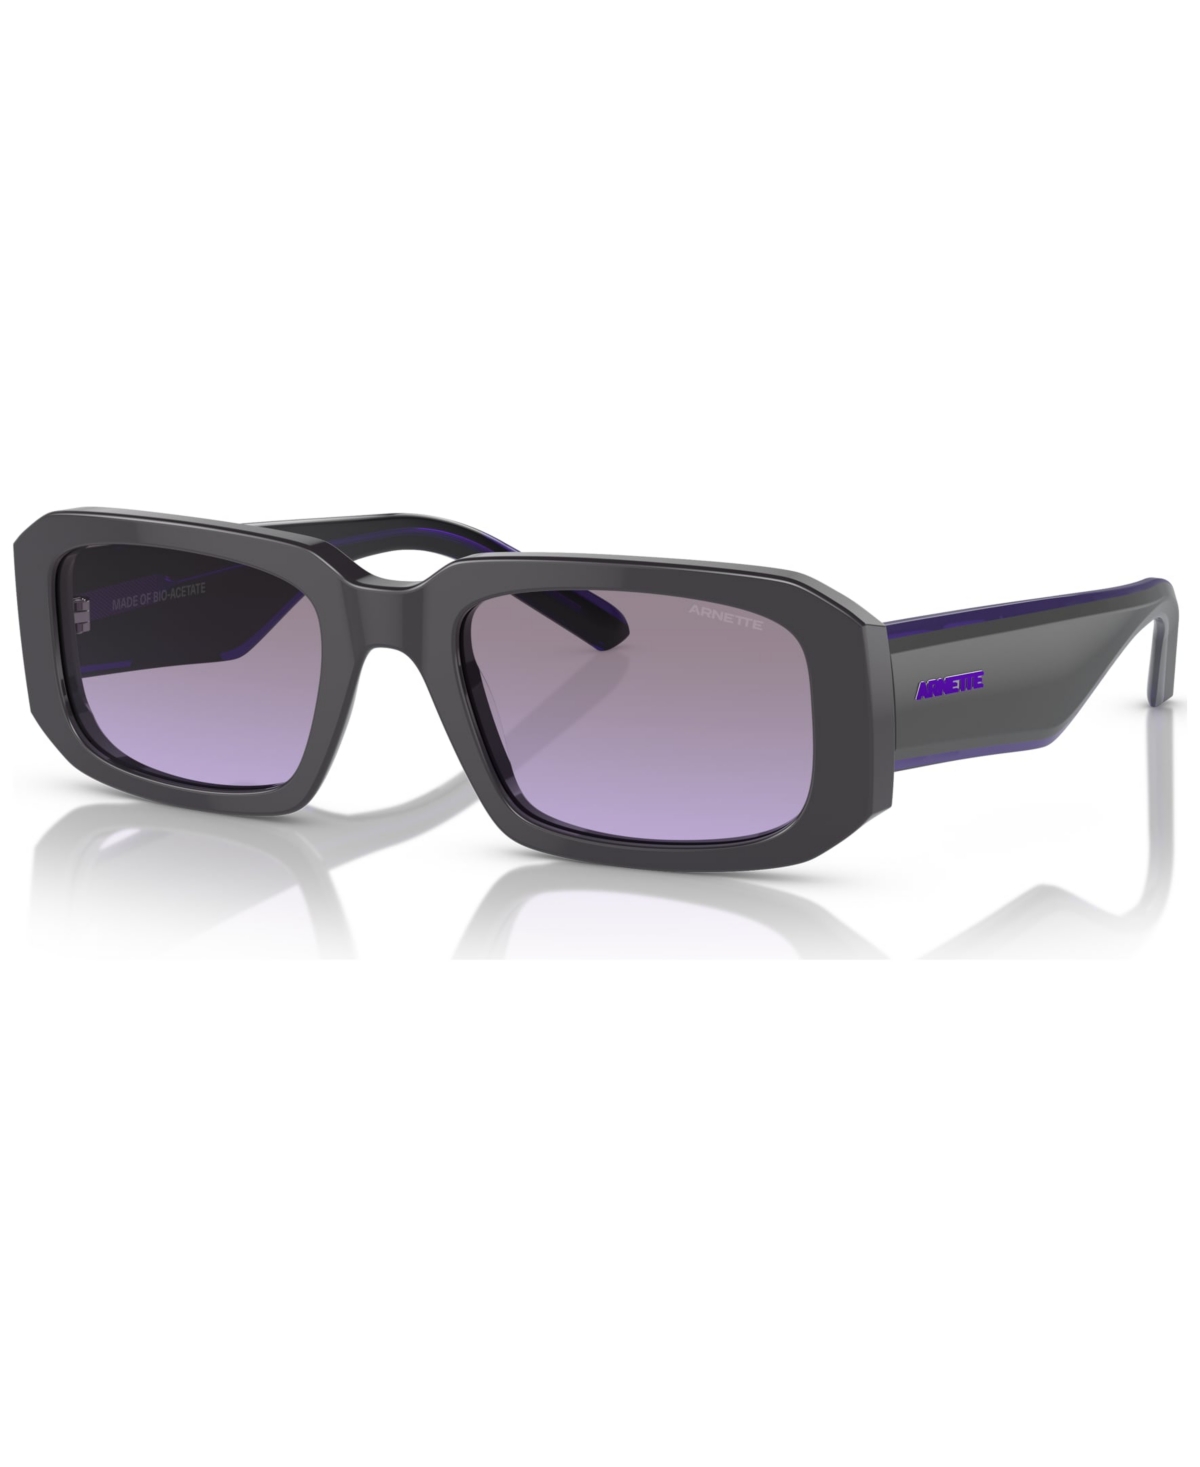 Arnette Mann Sunglass An4318 Thekidd In Fifty Grey,purple